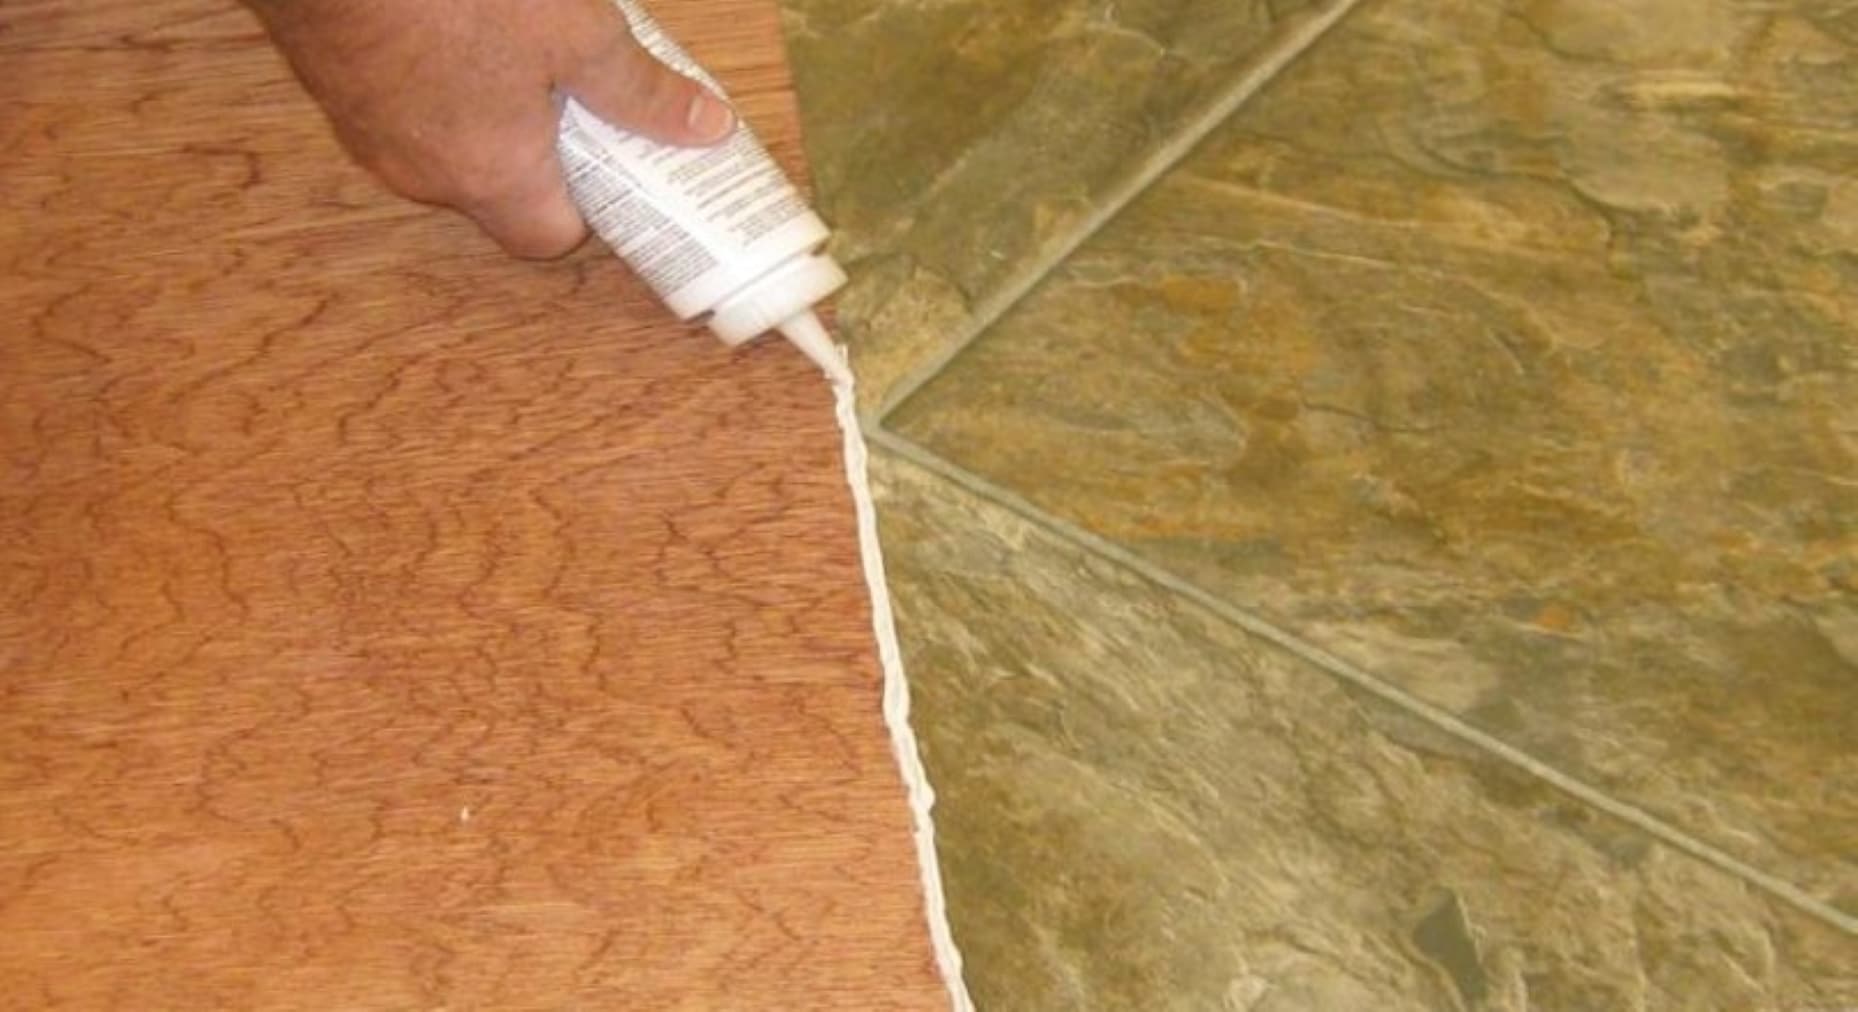 Capitol AC17 Carpet Flooring Glue (8-oz) in the Flooring Adhesives